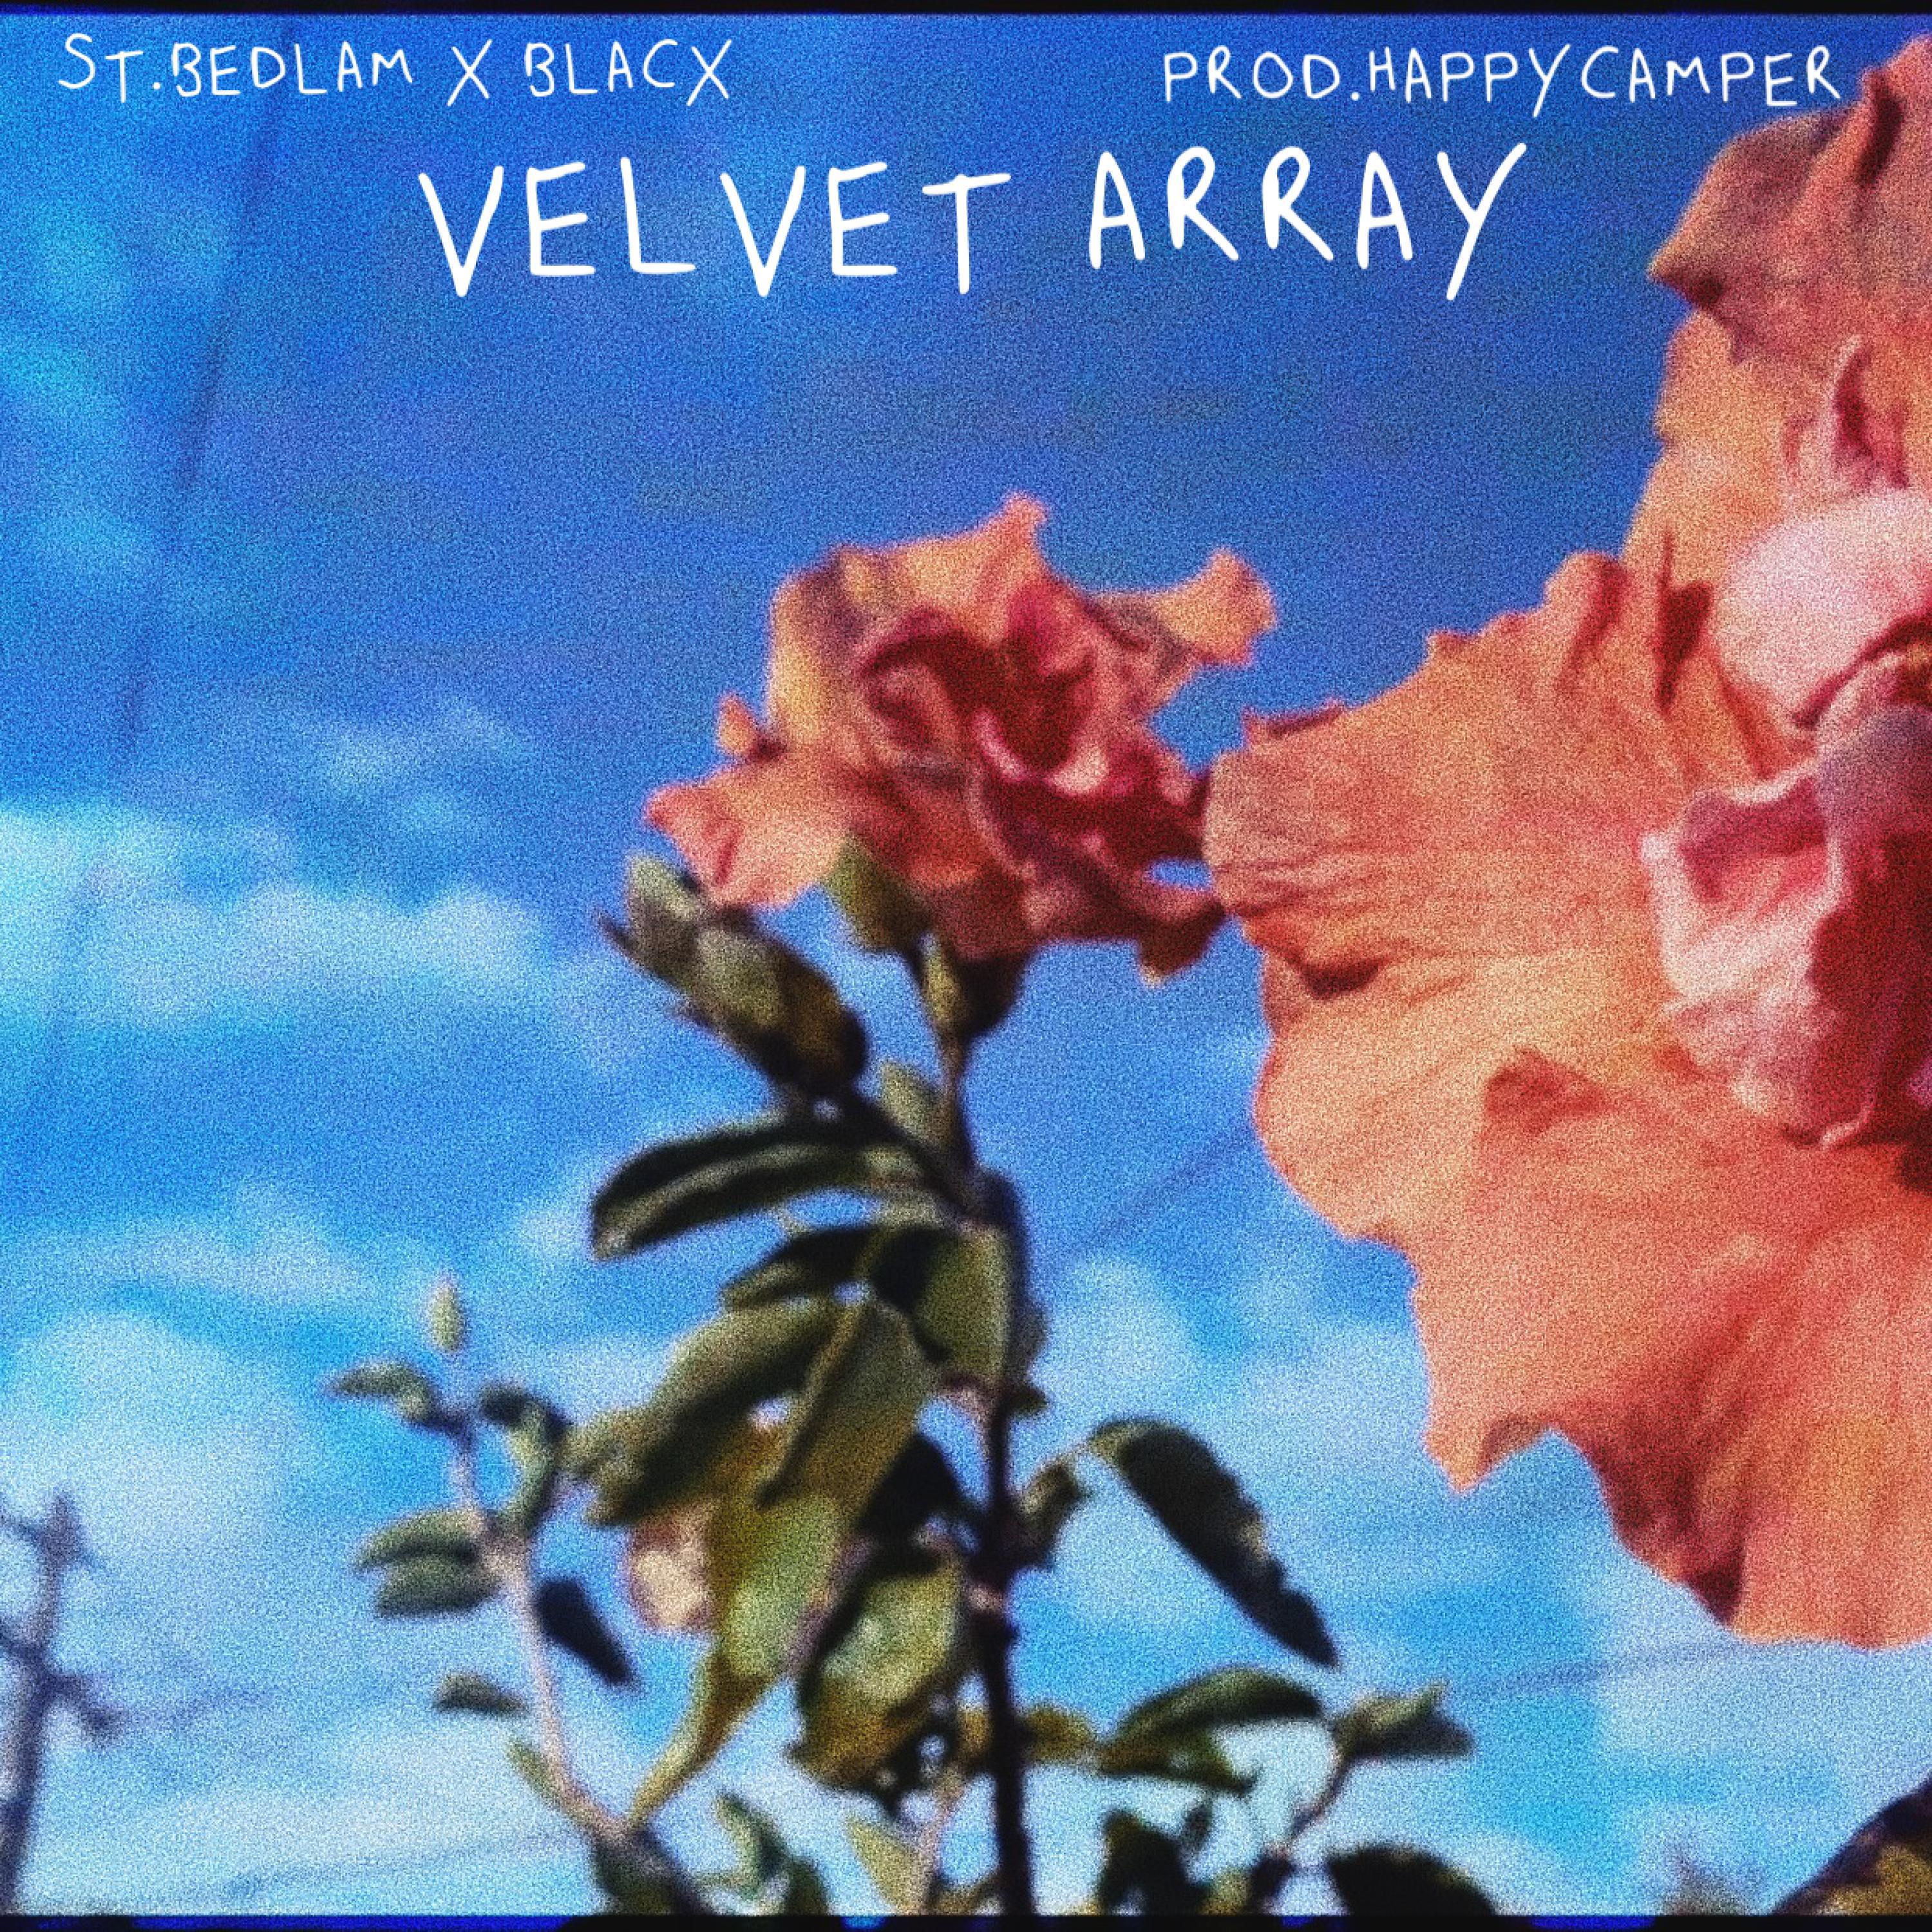 St.Bedlam - VELVET ARRAY (feat. Blacx)